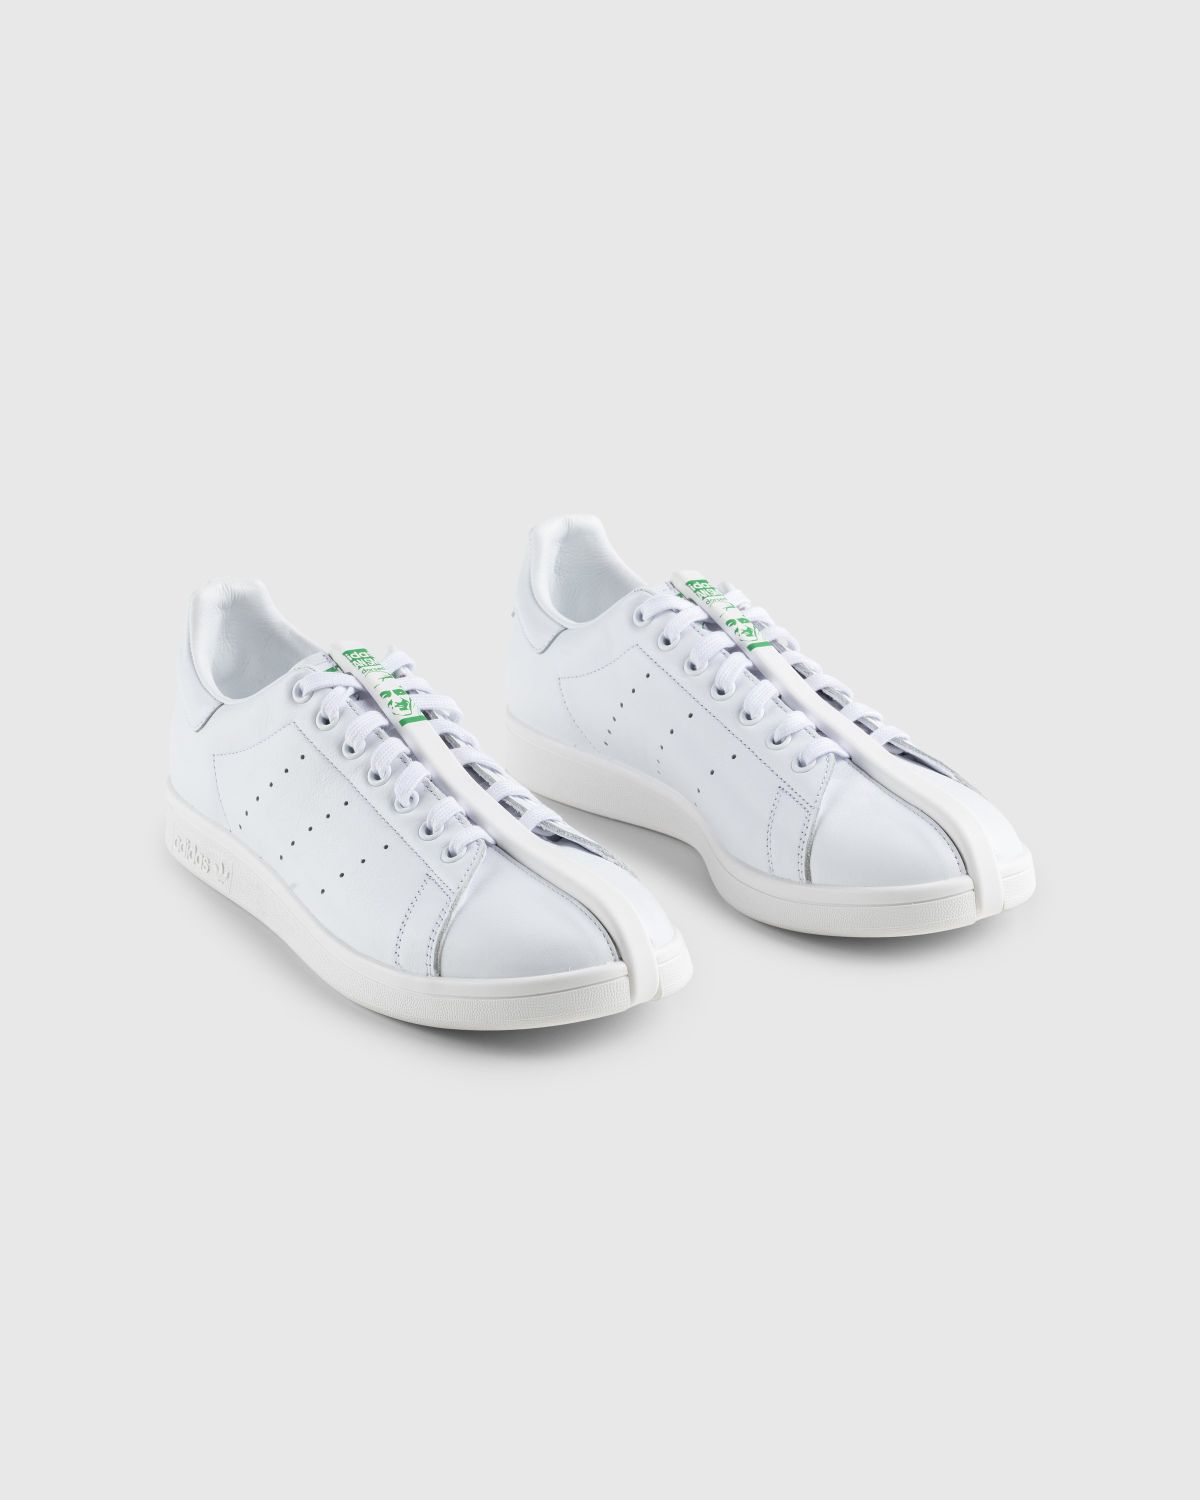 Craig Green x Adidas – CG Split Stan Smith White/Green - Sneakers - White - Image 3